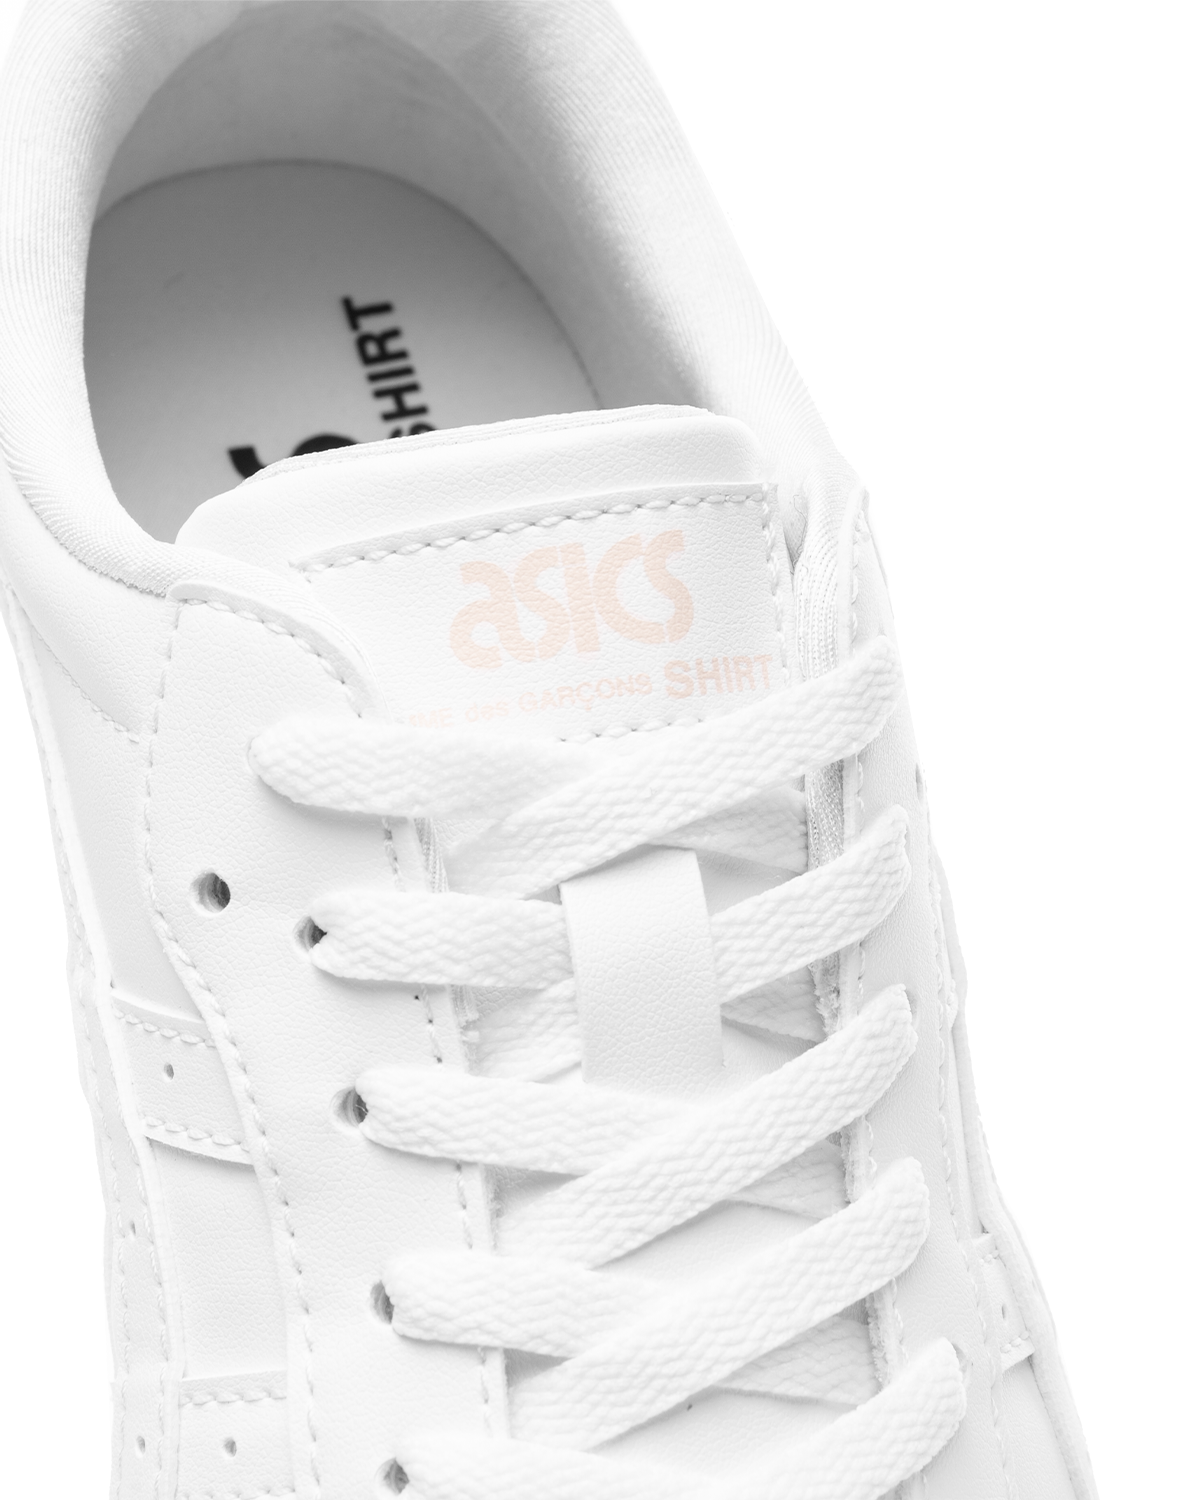 CDG x Asics Japan S Sneakers White